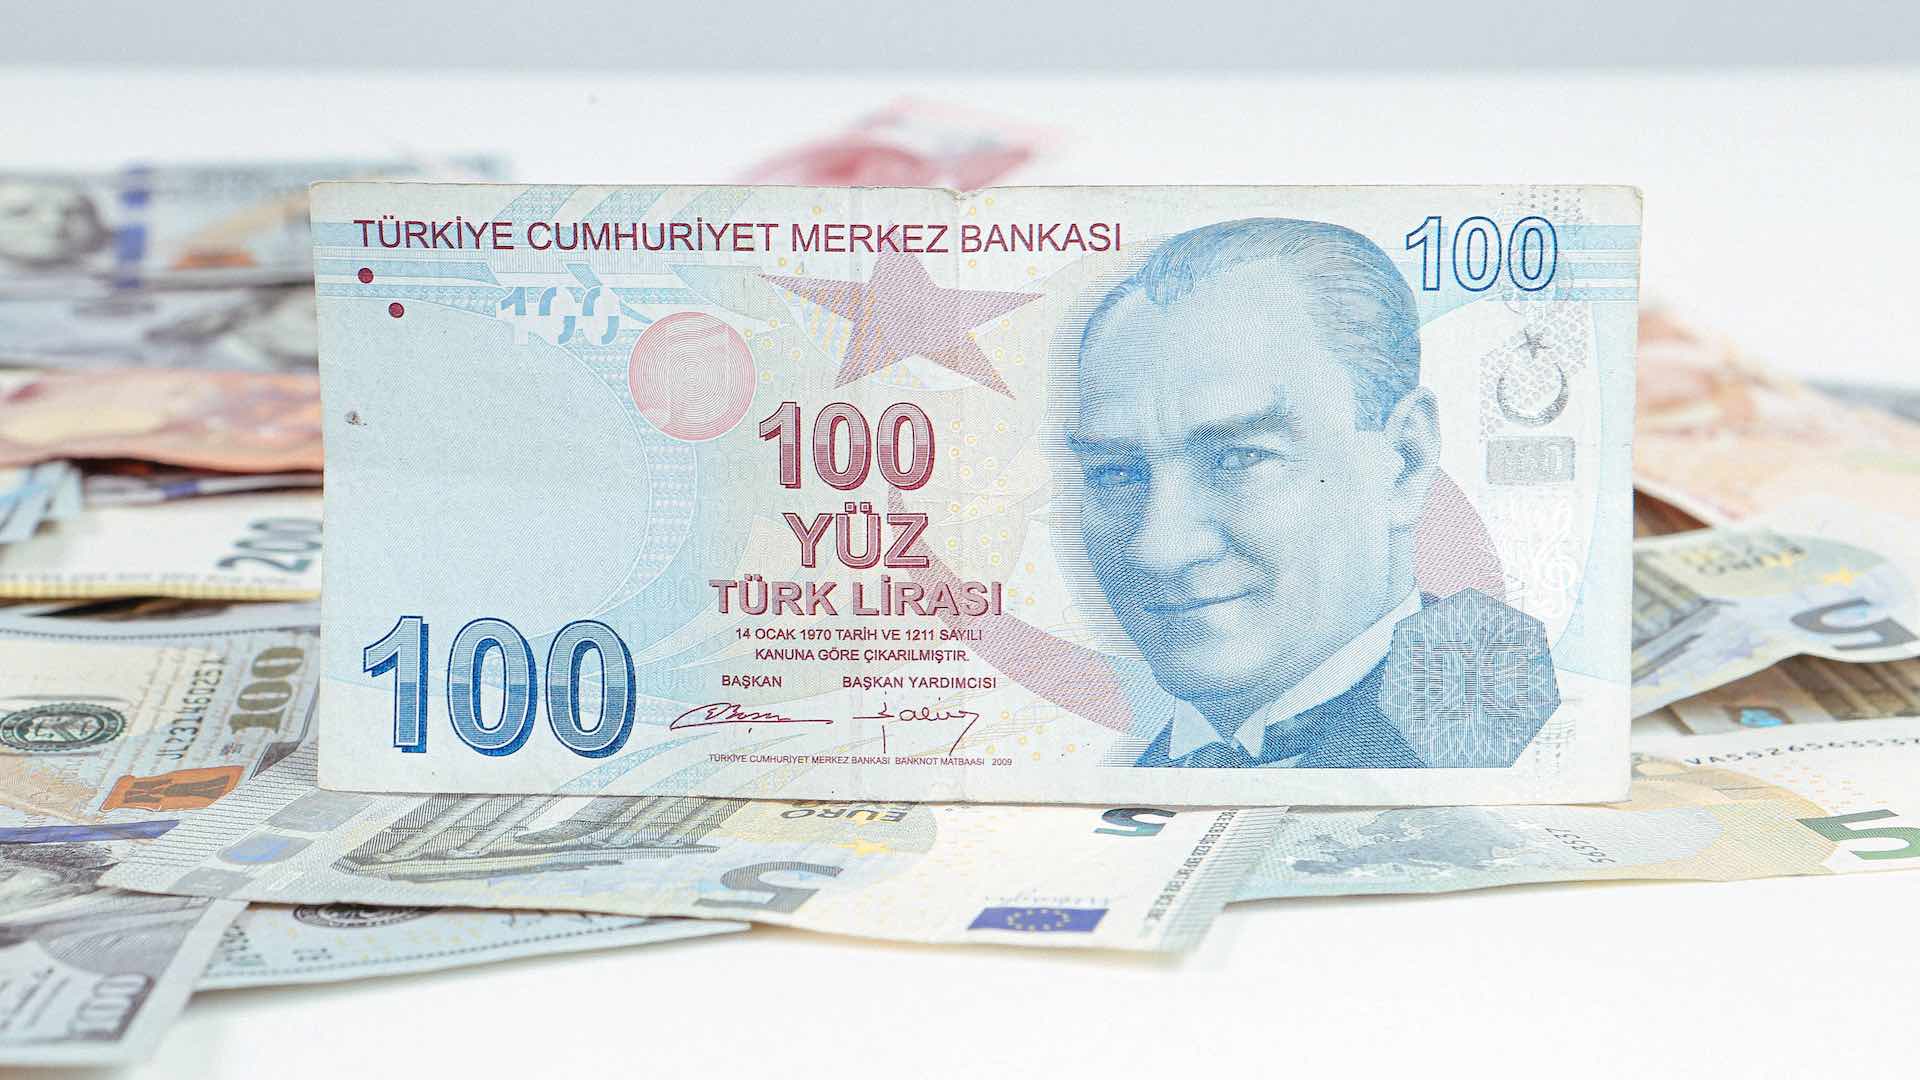 चलनवाढीच्या वाढीमुळे तुर्की लिराने अमेरिकन डॉलरच्या तुलनेत नवा नीचांक नोंदवला